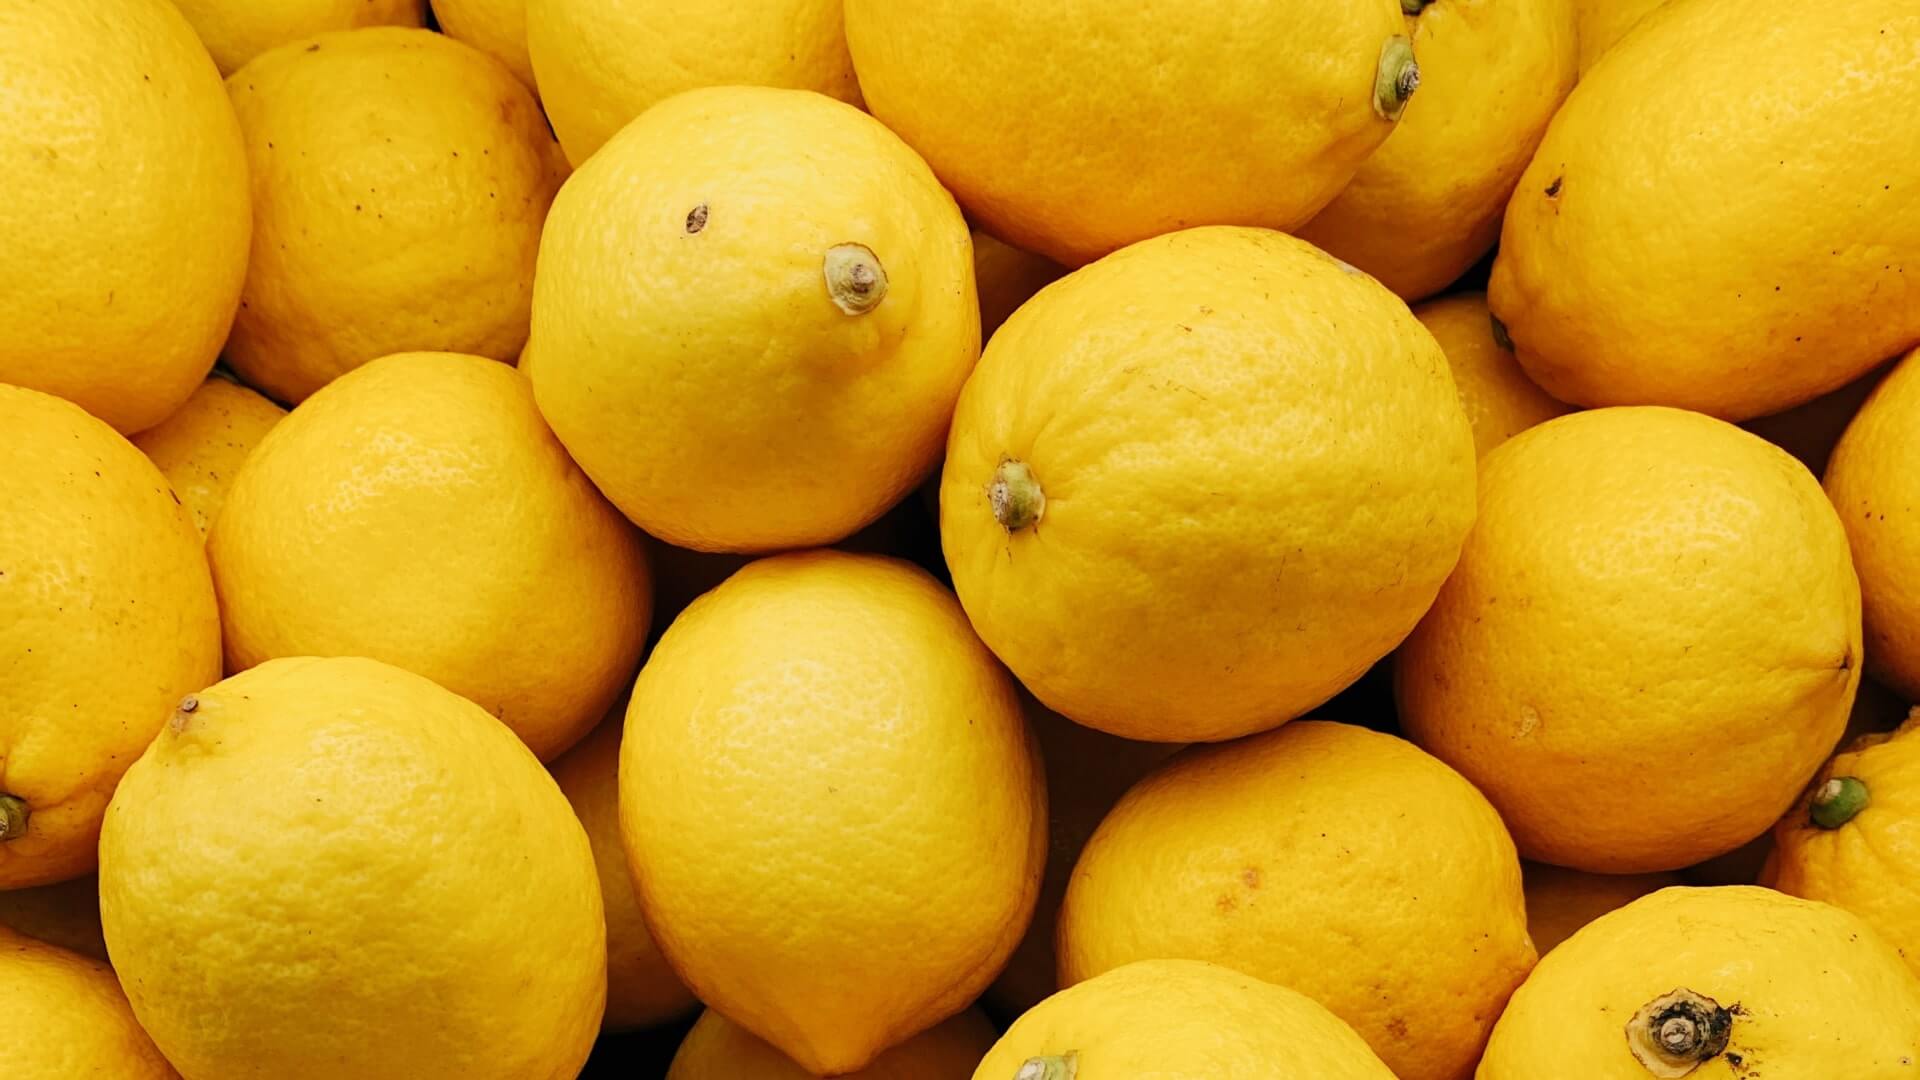 lemons background image